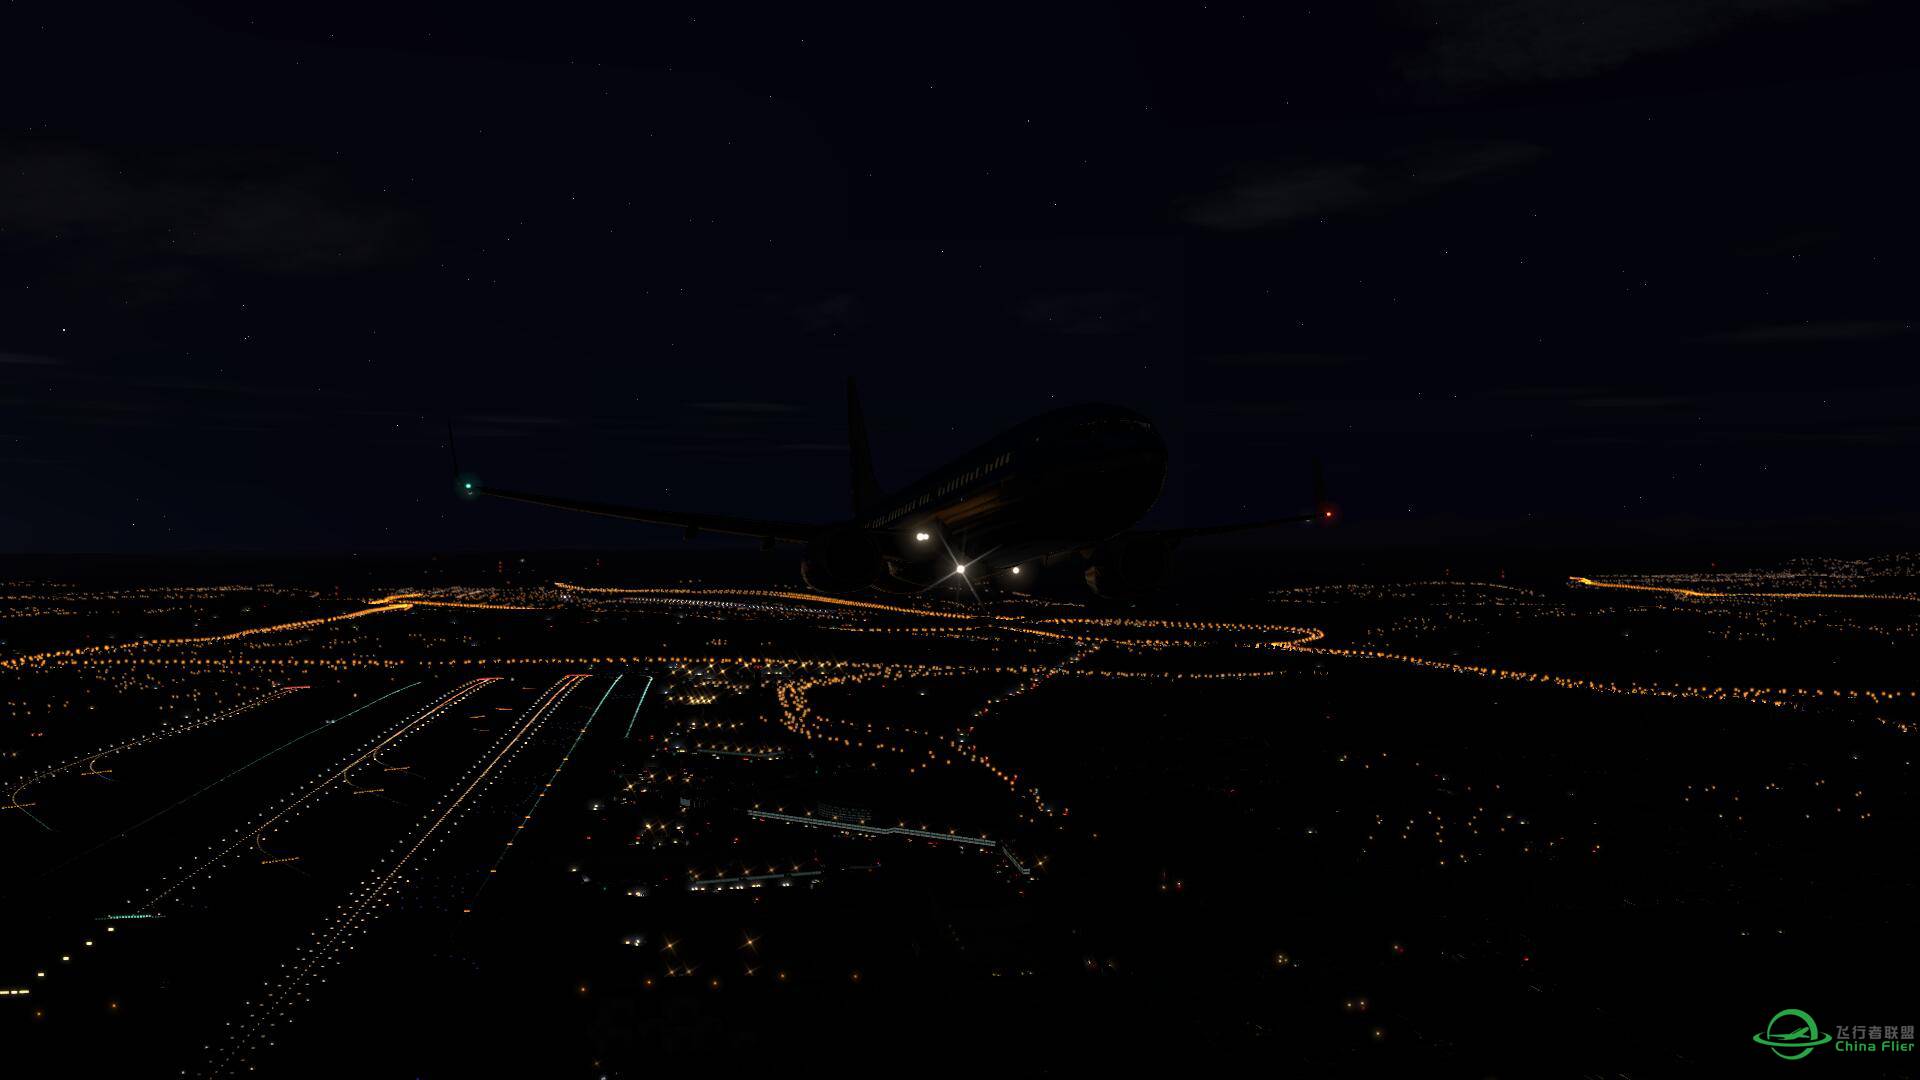 X-plane 11 beta 上手图 含夜景+黄昏-2112 